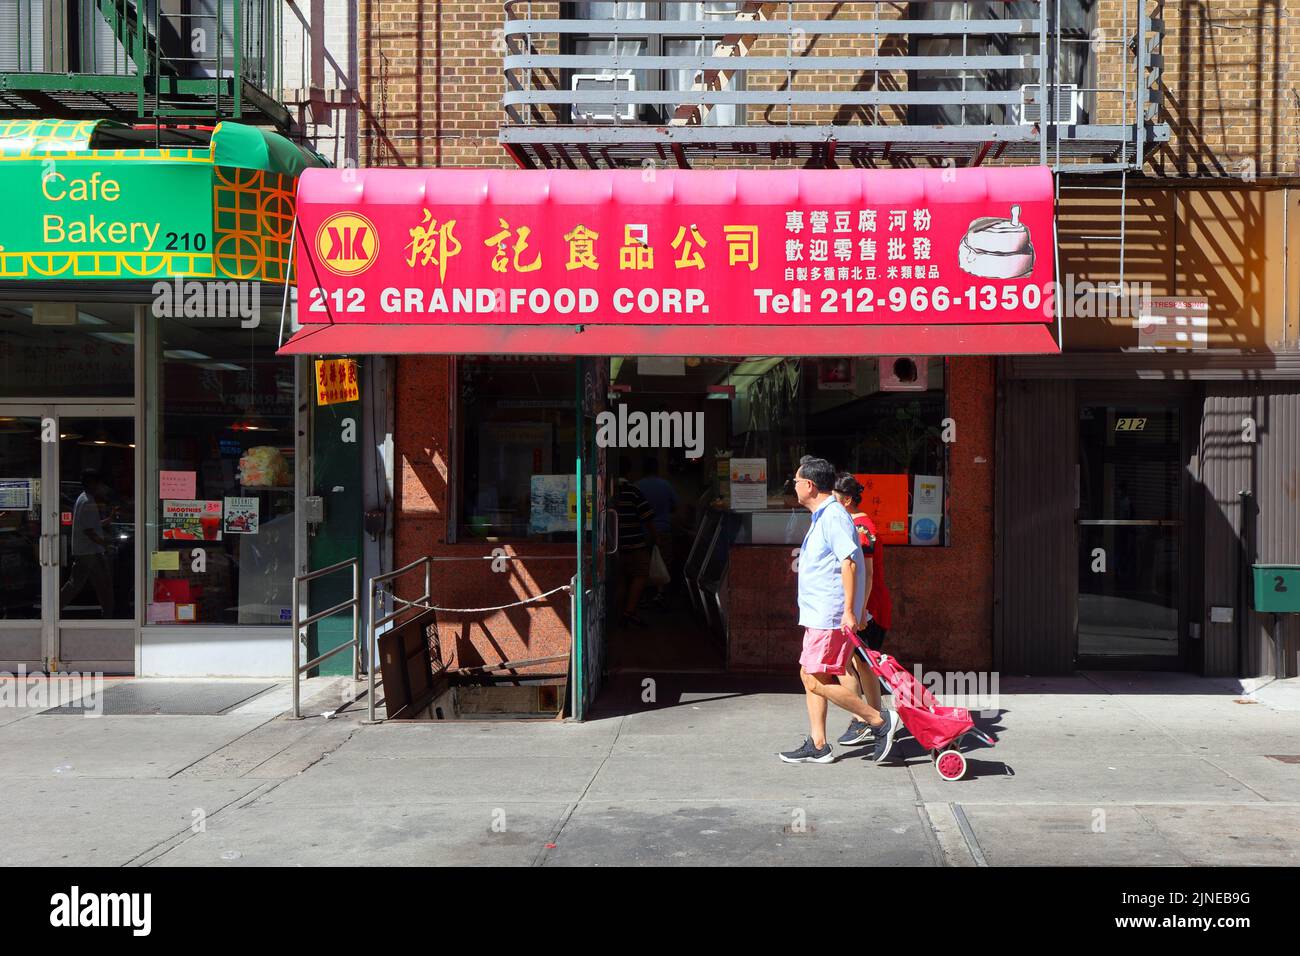 Kong Kee 鄺記食品公司, 212 Grand St, New York, NY. Façade extérieure d'un fabricant de tofu frais et de nouilles de riz dans le quartier chinois de Manhattan. Banque D'Images